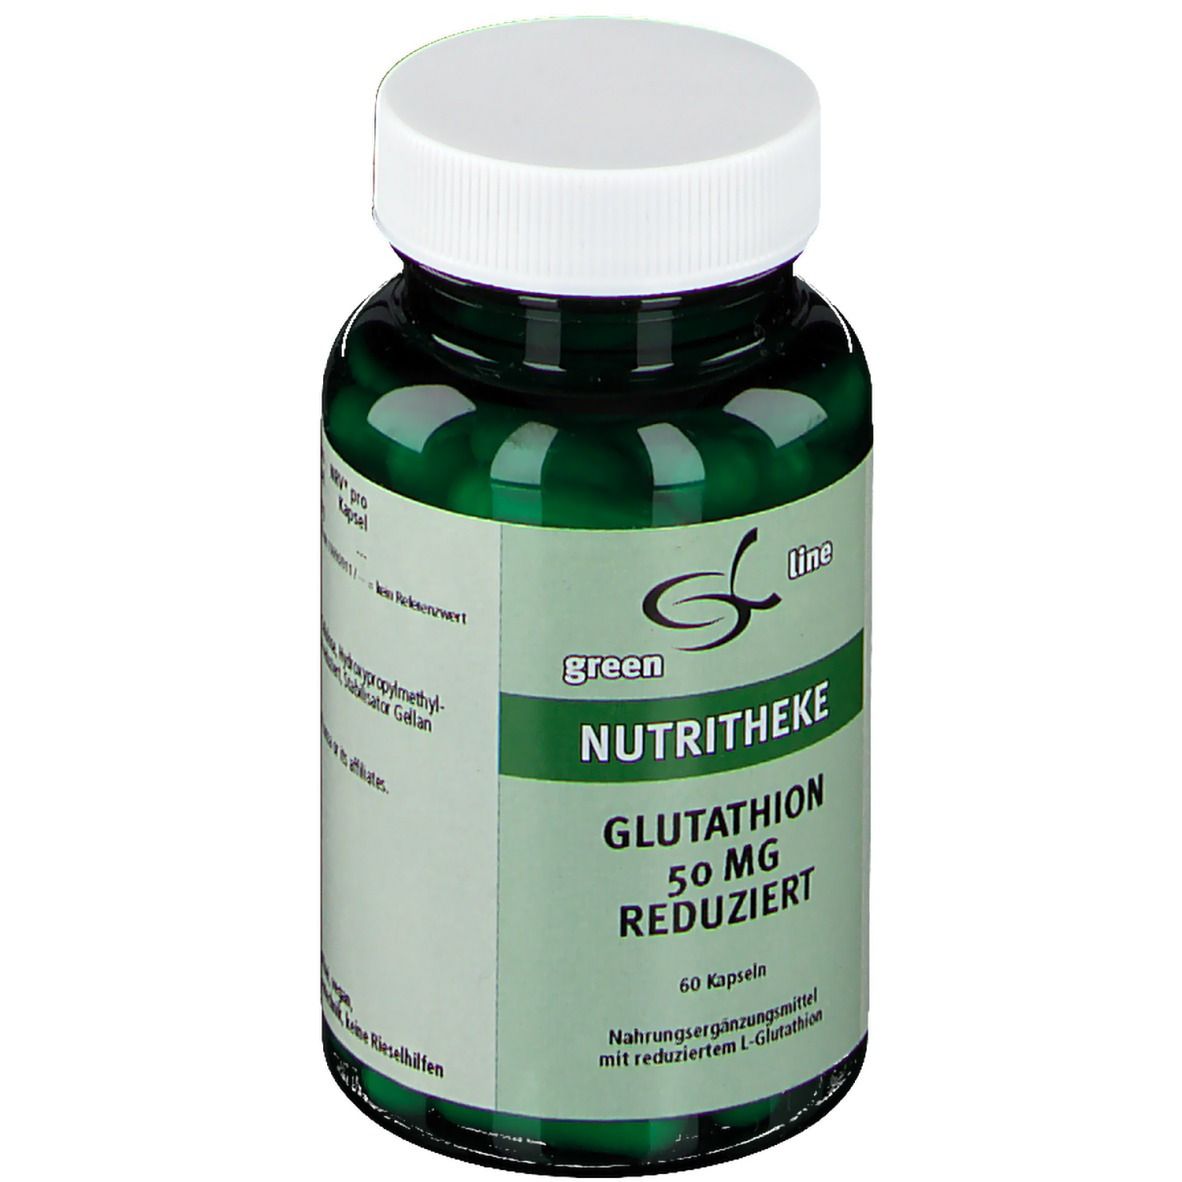 green line Glutathion 50 mg reduziert